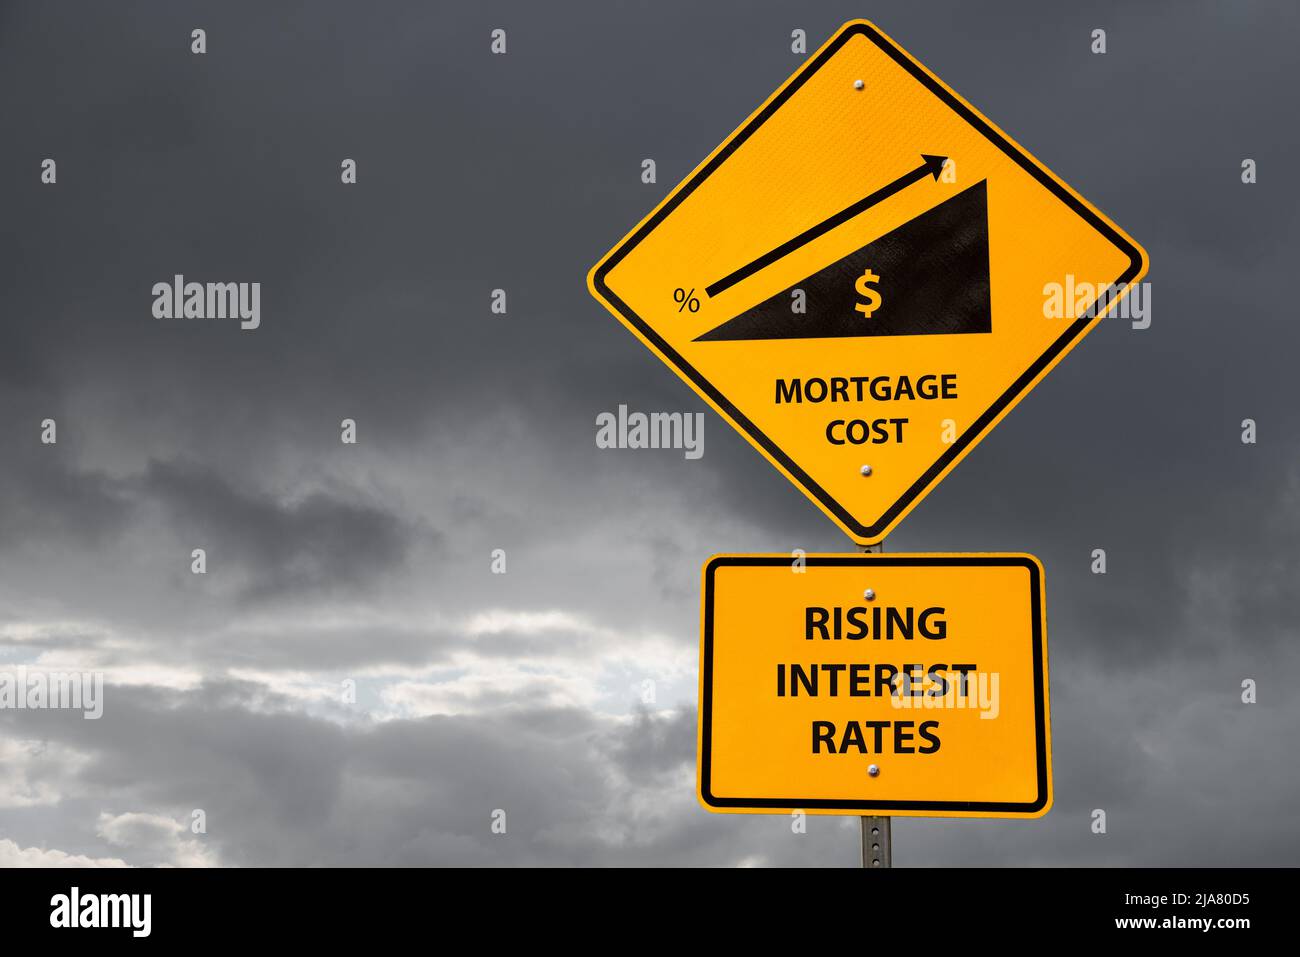 Signe conceptuel de la hausse des coûts hypothécaires en raison de taux d'intérêt plus élevés avec ciel de tempête en arrière-plan. Concept commercial et financier. Copier l'espace. Banque D'Images